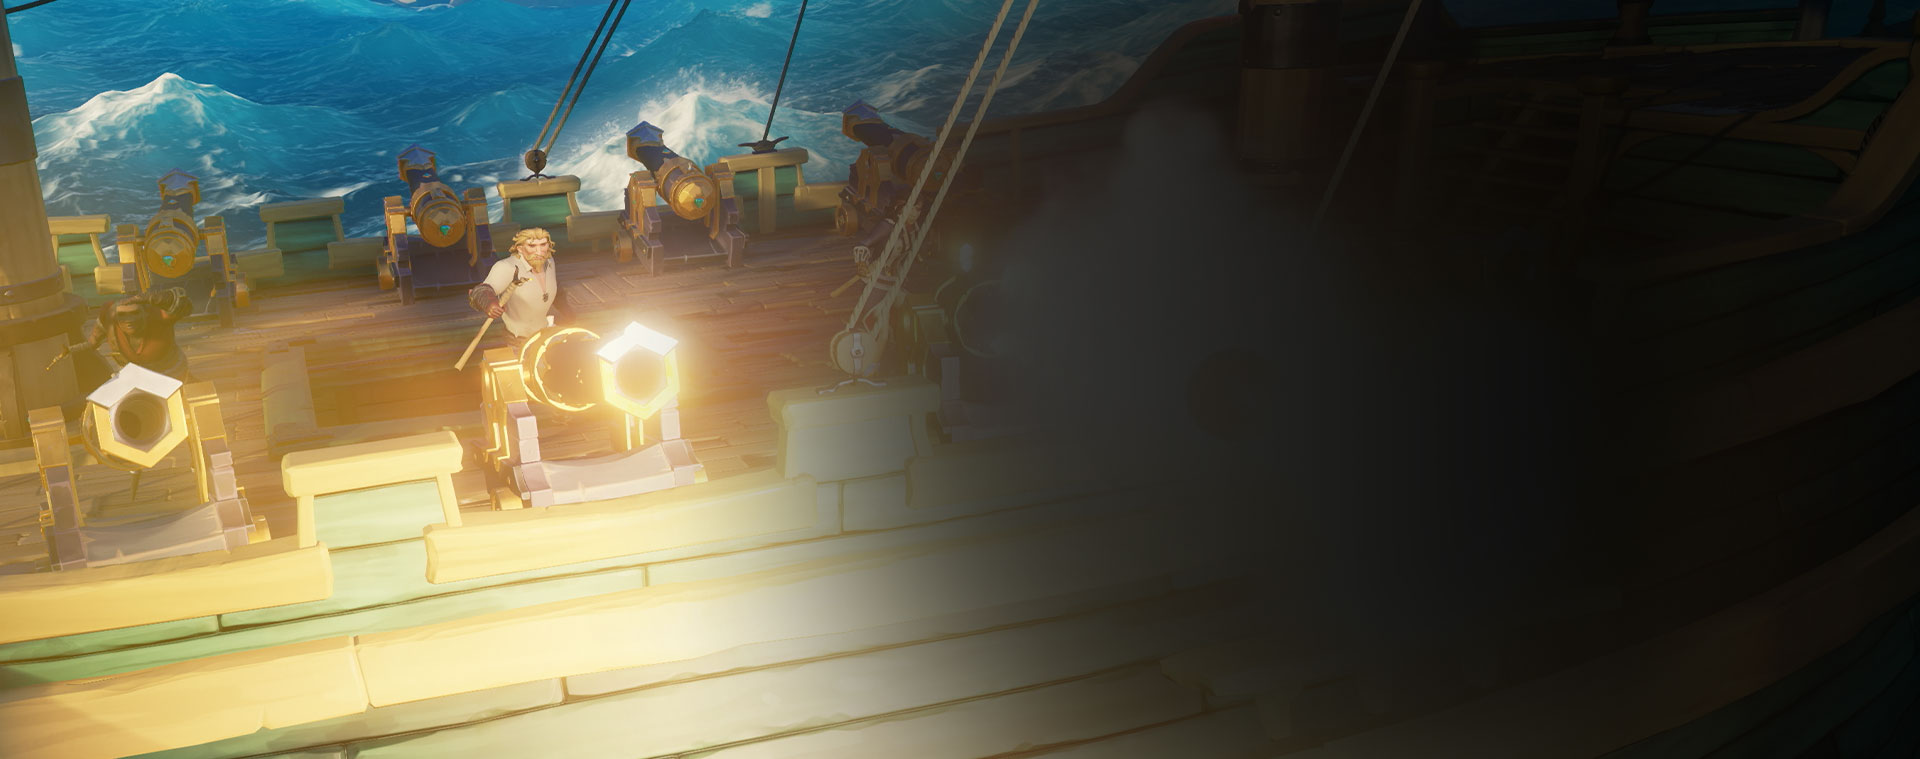 Charaktere aus Sea of Thieves schießen auf einem Schiff Kanonen ab